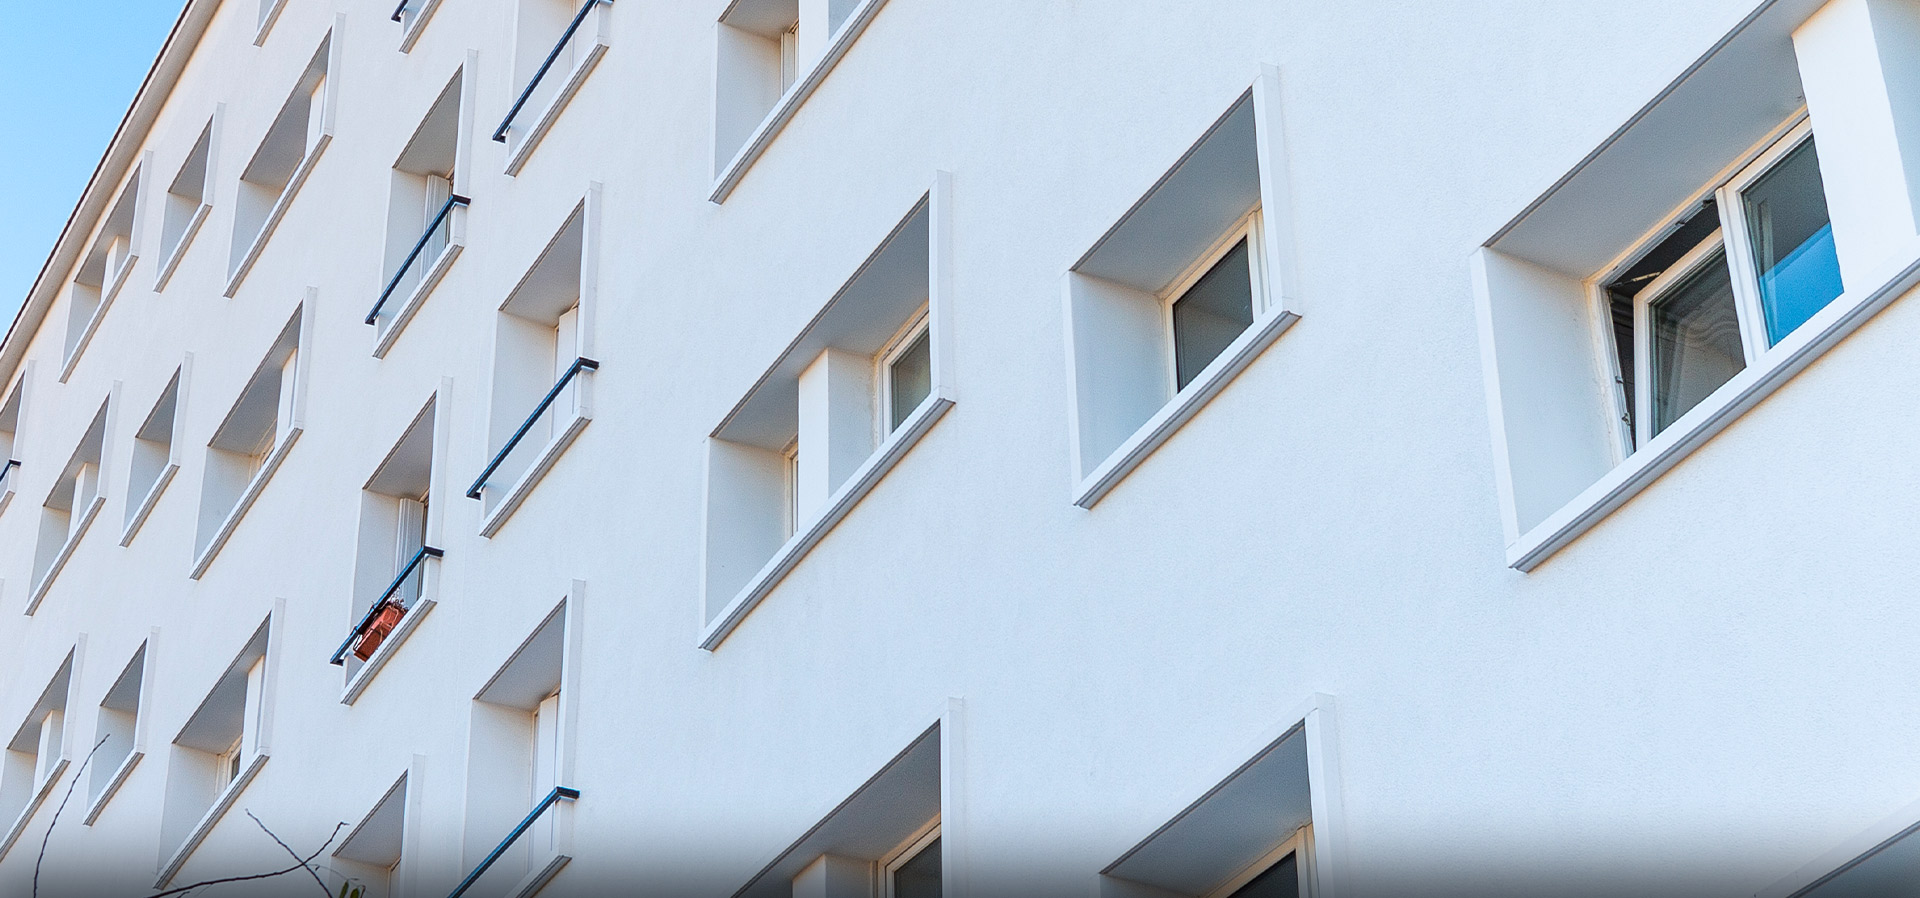 FRAQUELLI Montreuil | Entreprise du bâtiment pour la réalisation et rénovation de cage d'escalier, sols, hall d'immeuble et façades (isolation, pierre de taille, peinture, nettoyage)